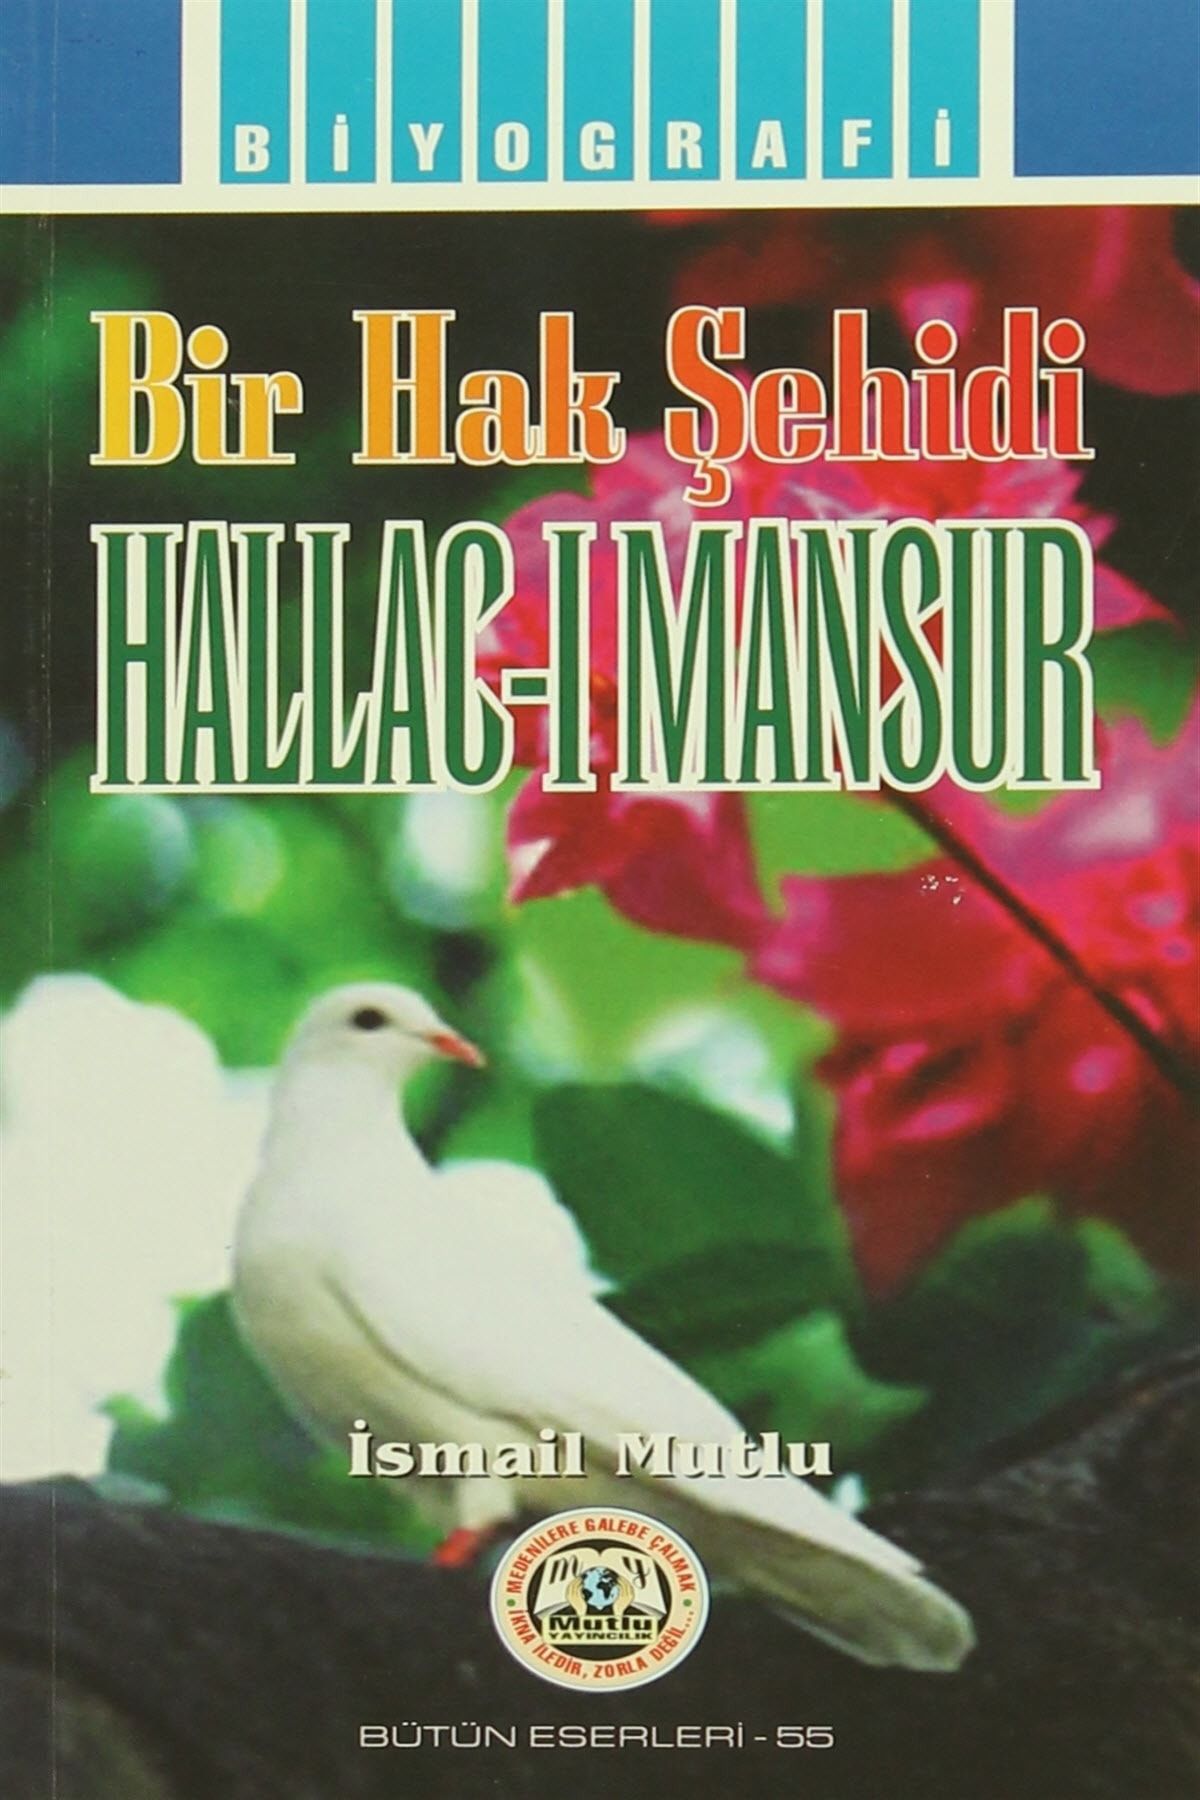 Mutlu Yayıncılık Hallac-ı Mansur - İsmail Mutlu